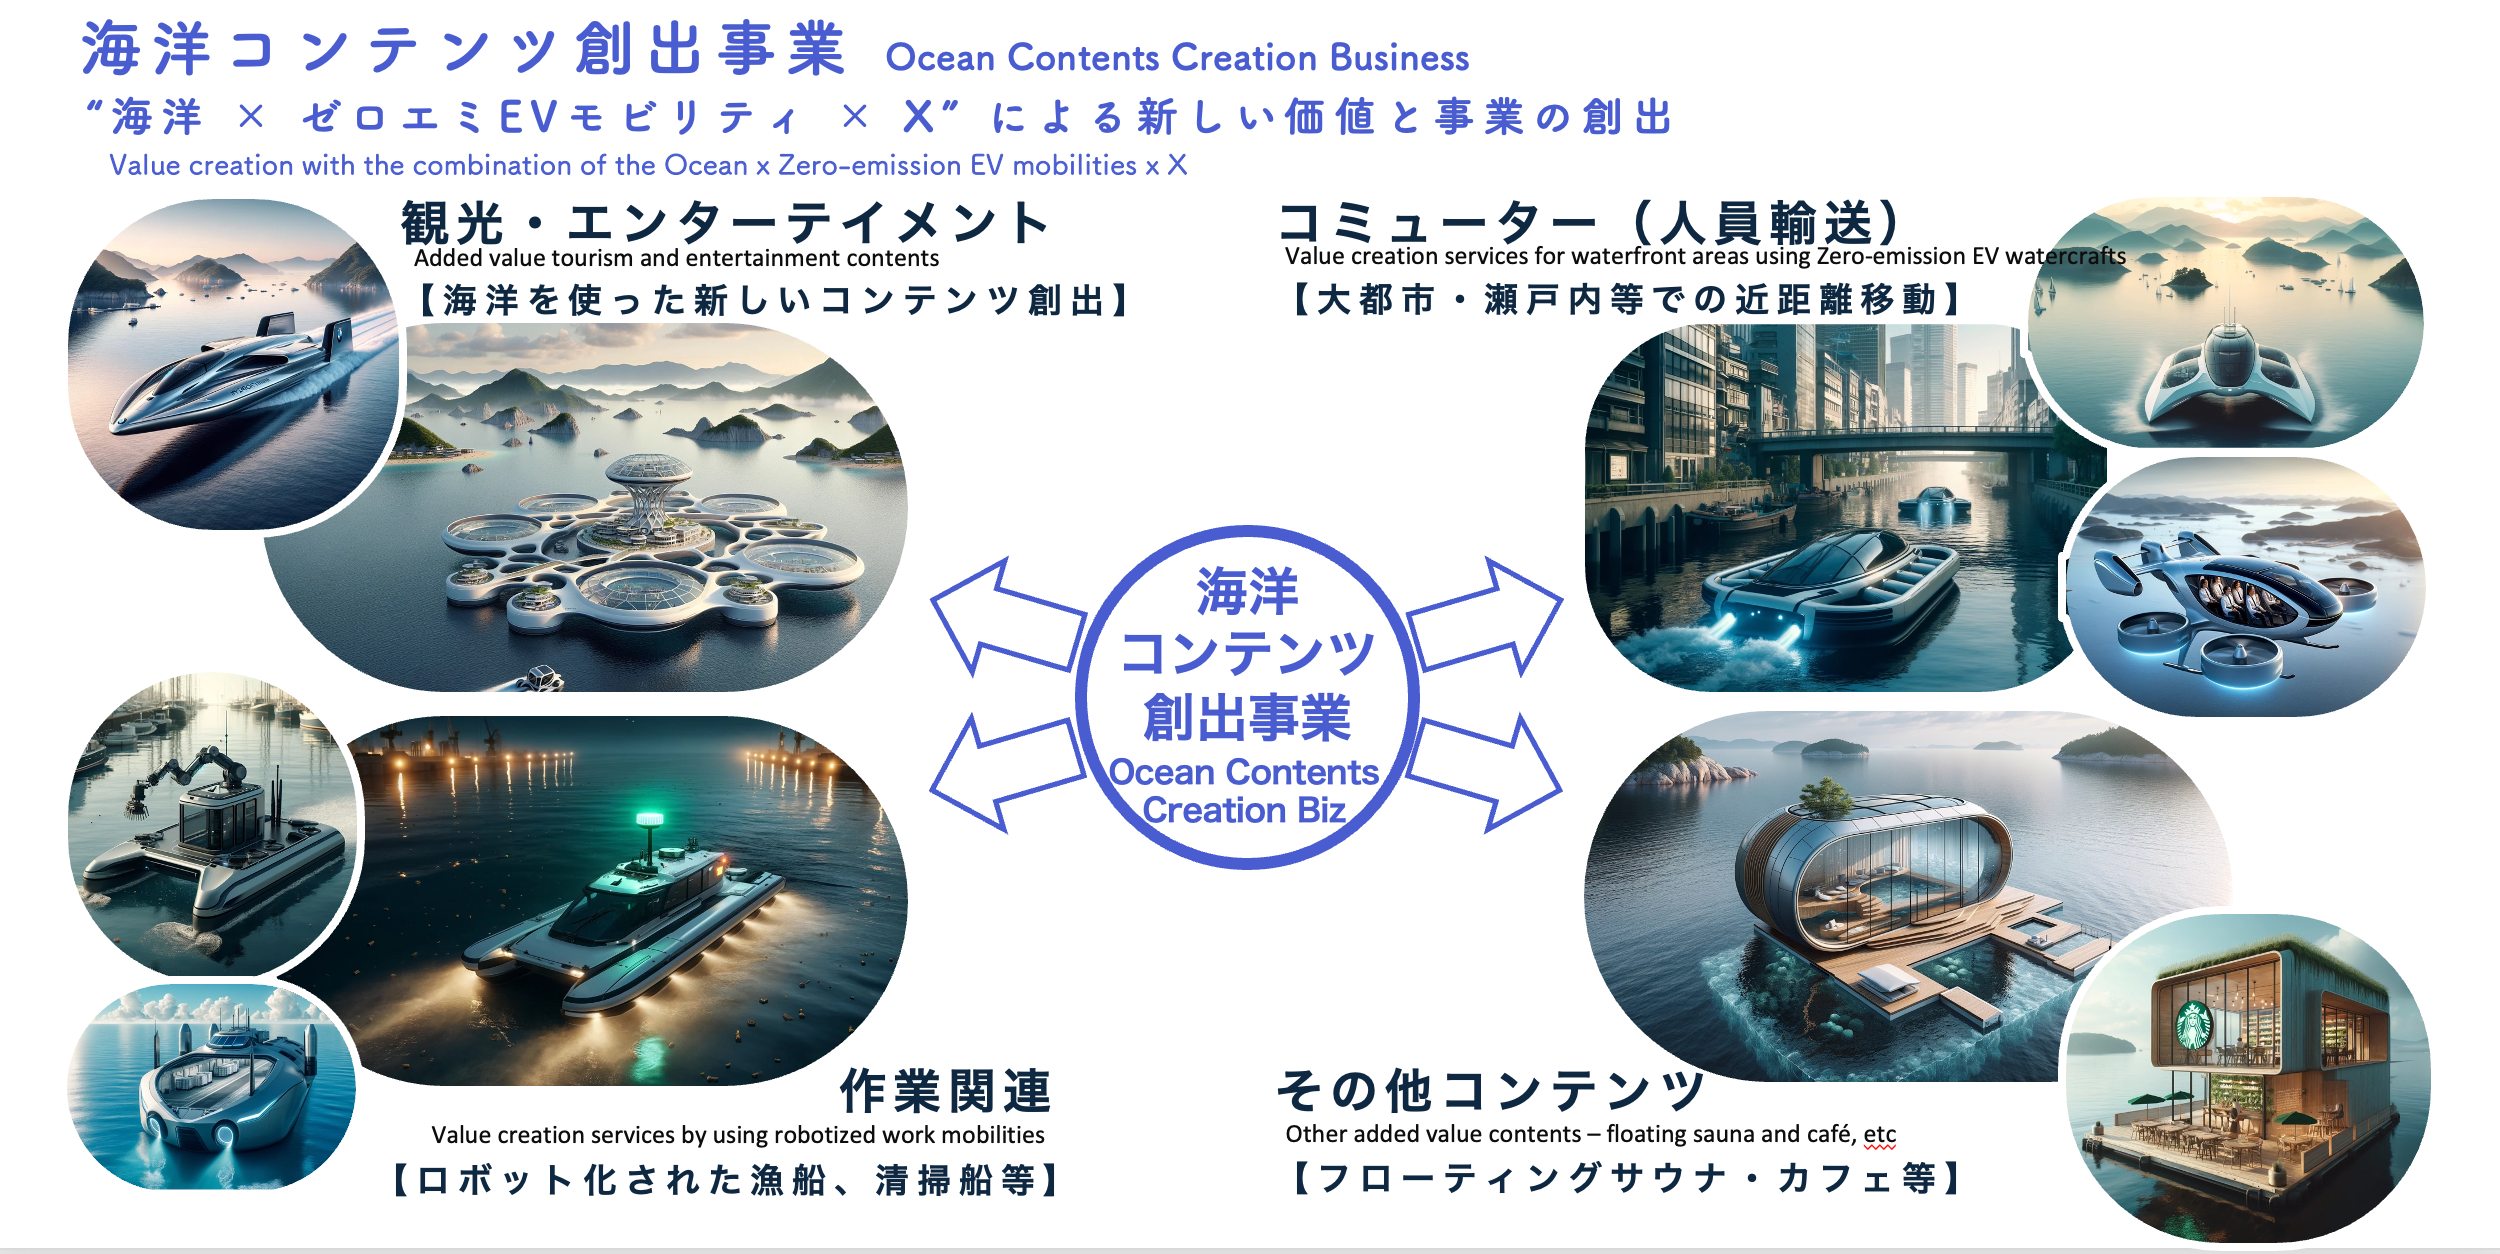 日本初、《ロボットEV船》×《自動化》×《エネルギー最適化ソリューション》による海洋新価値創出に特化したプ...